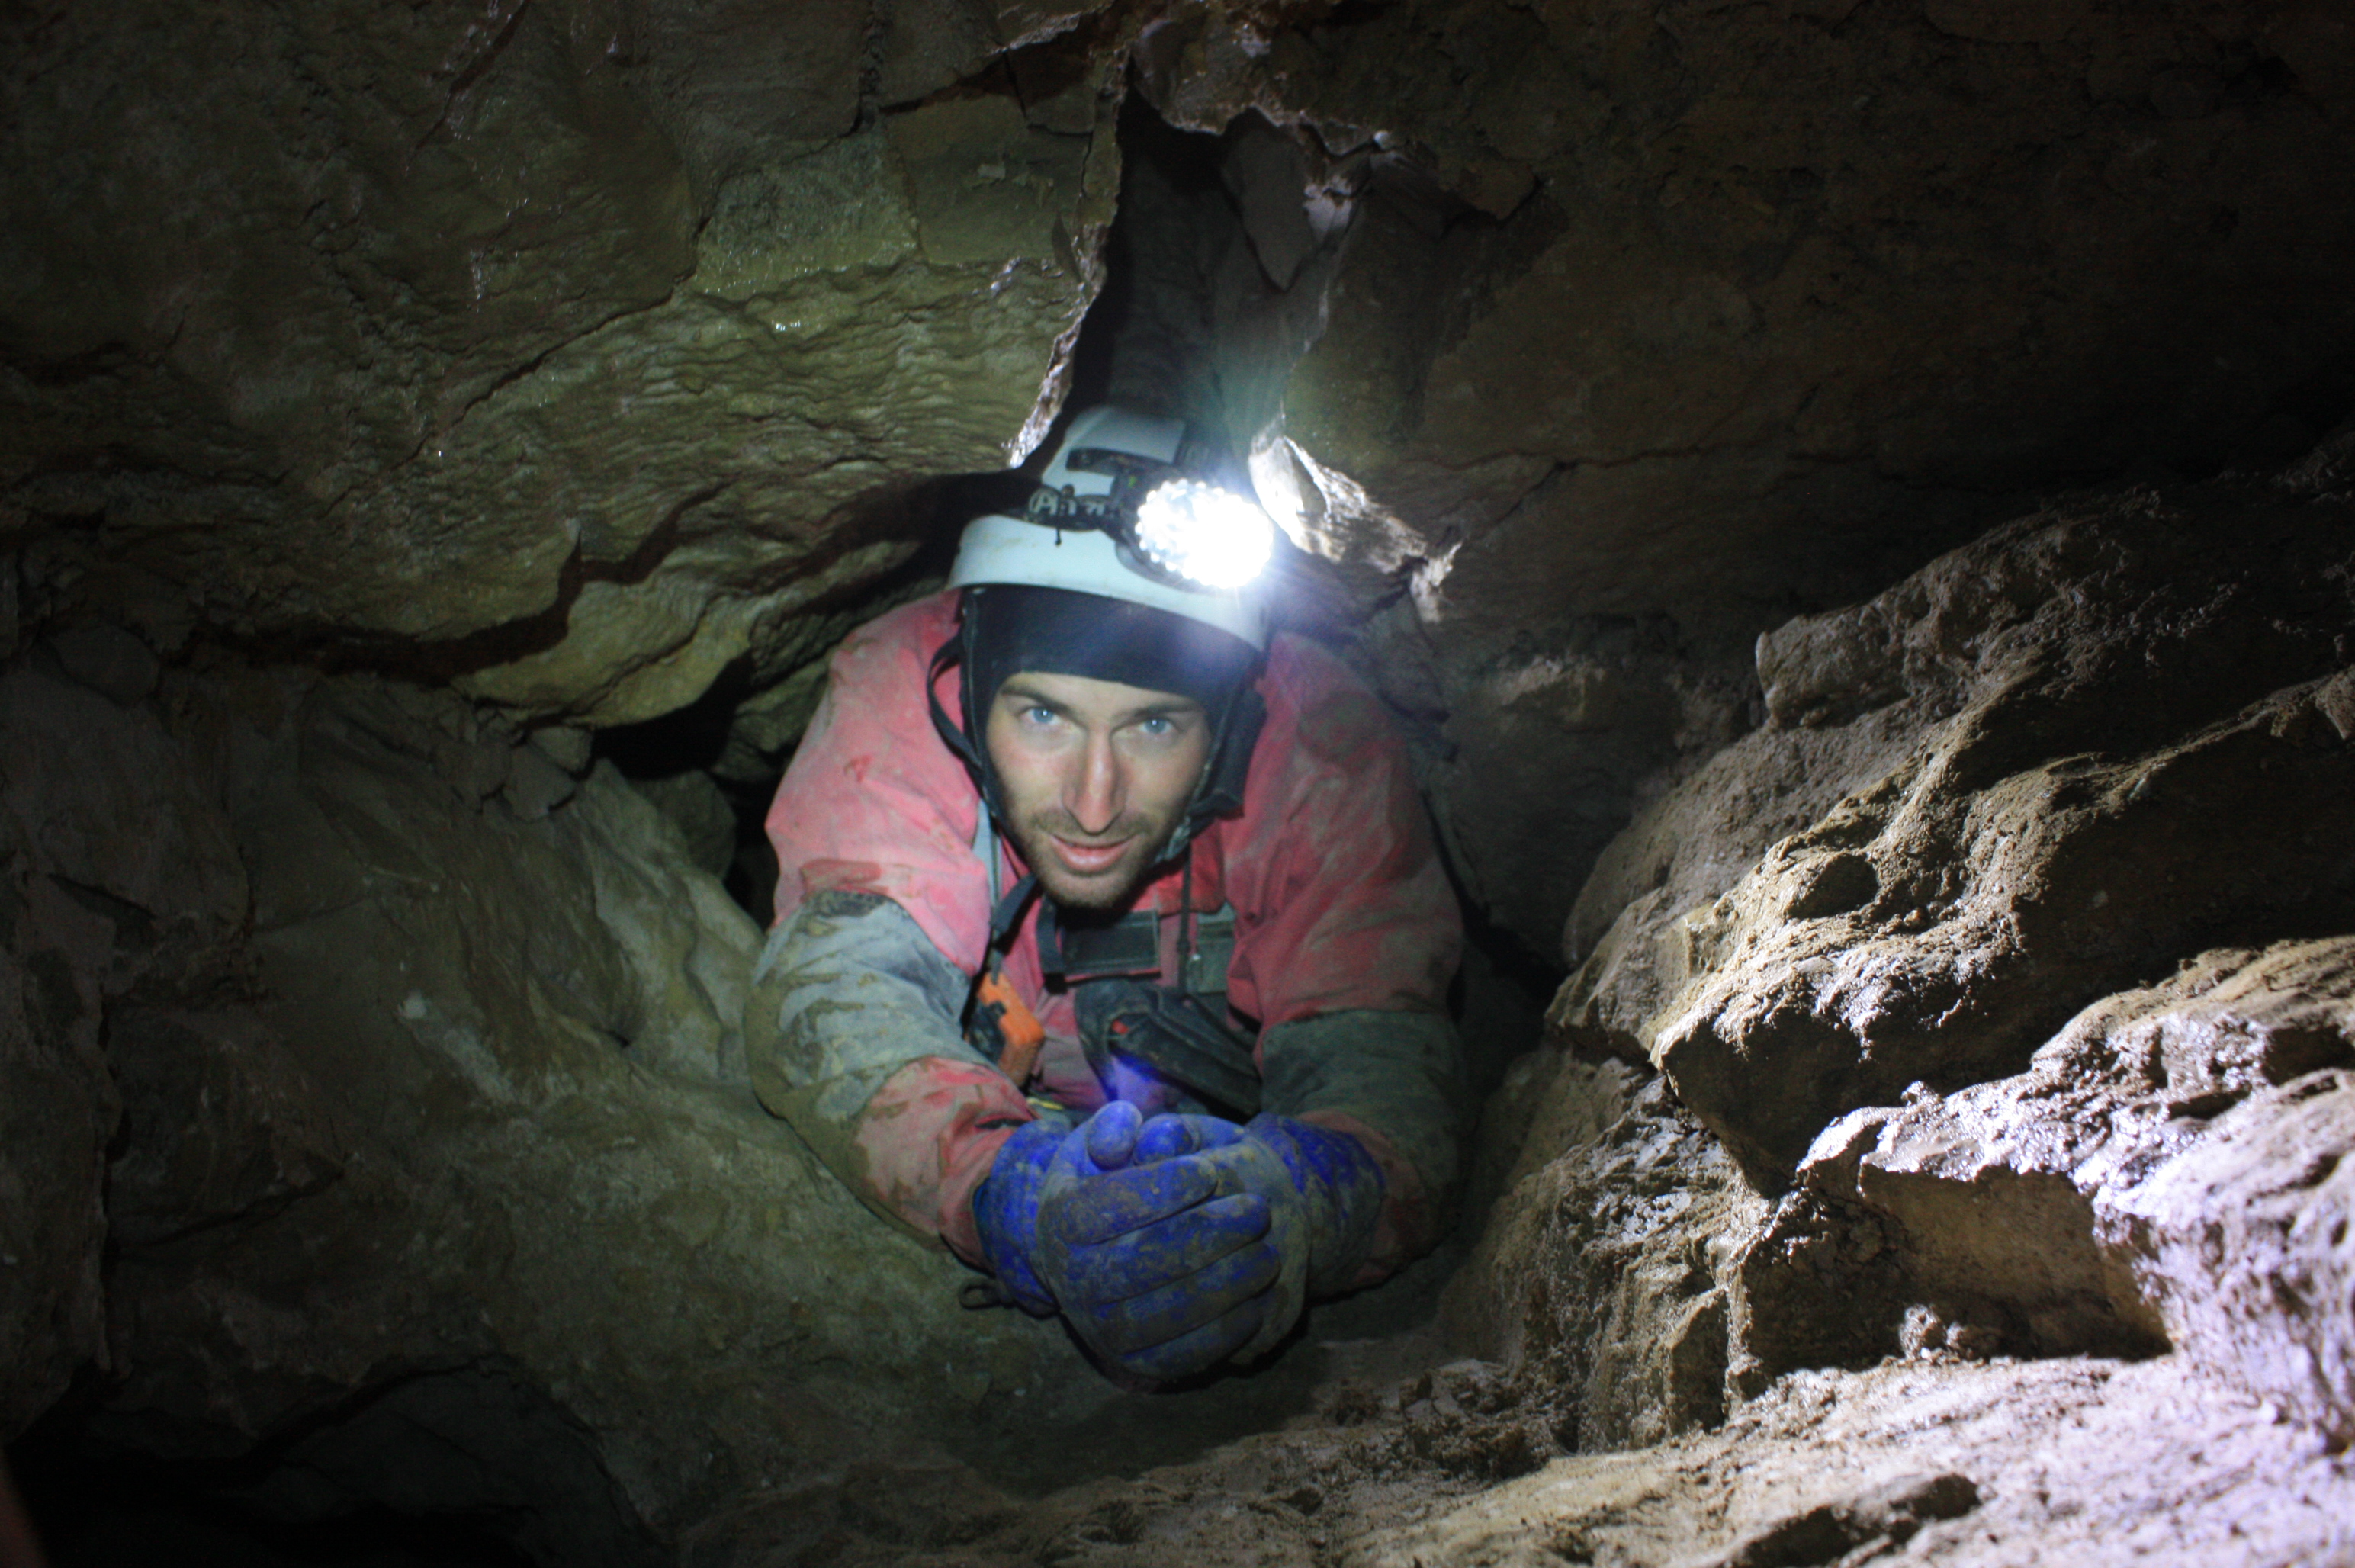 מסע אל בטן האדמה: חוקרים ישראליים במערה העמוקה בעולם